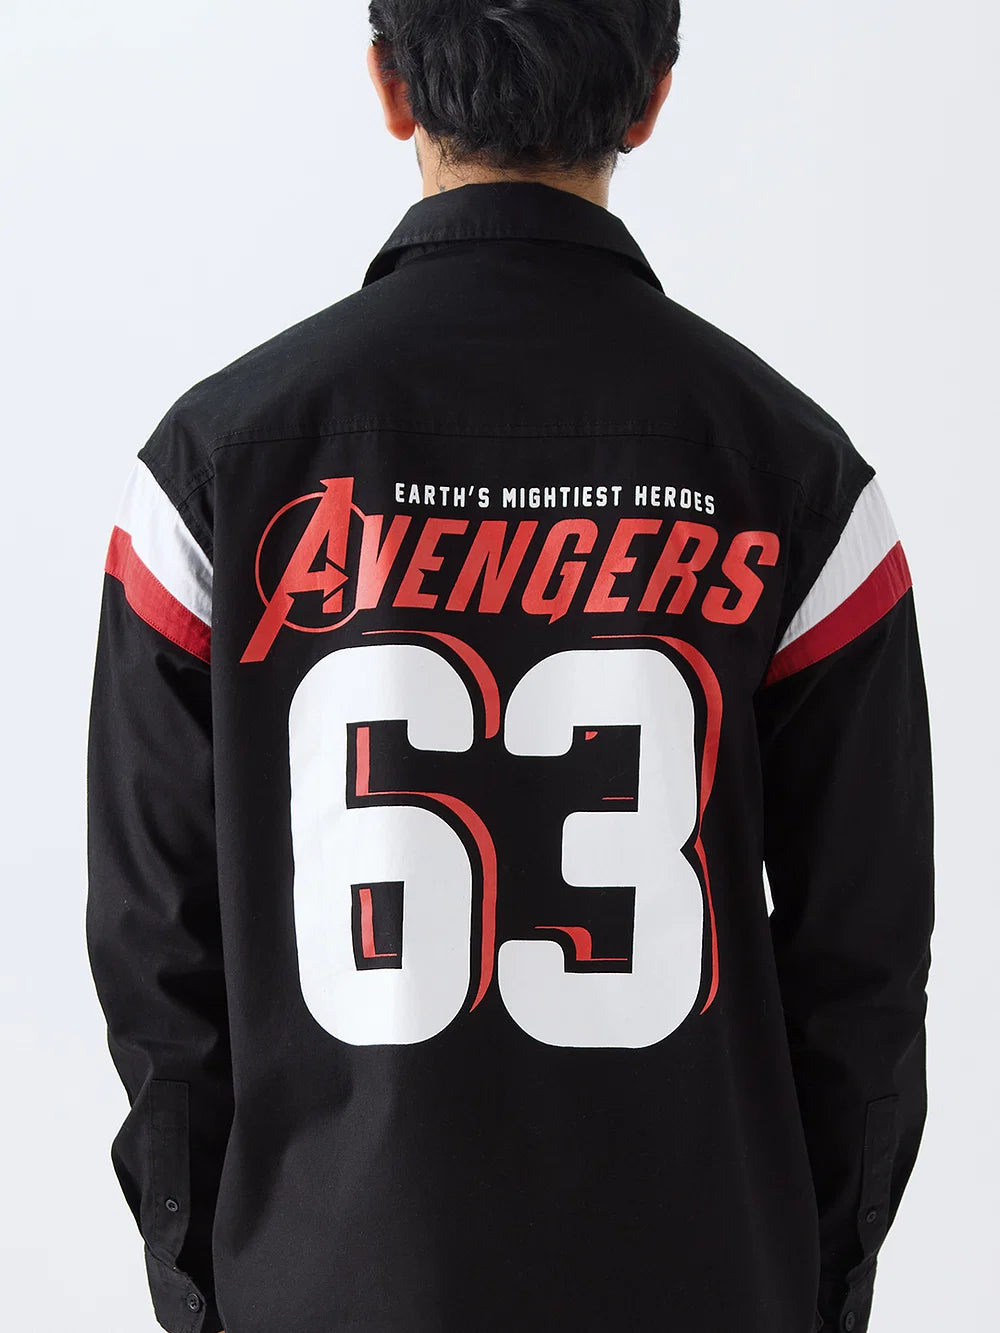 Marvel Avengers 63 (UK version)